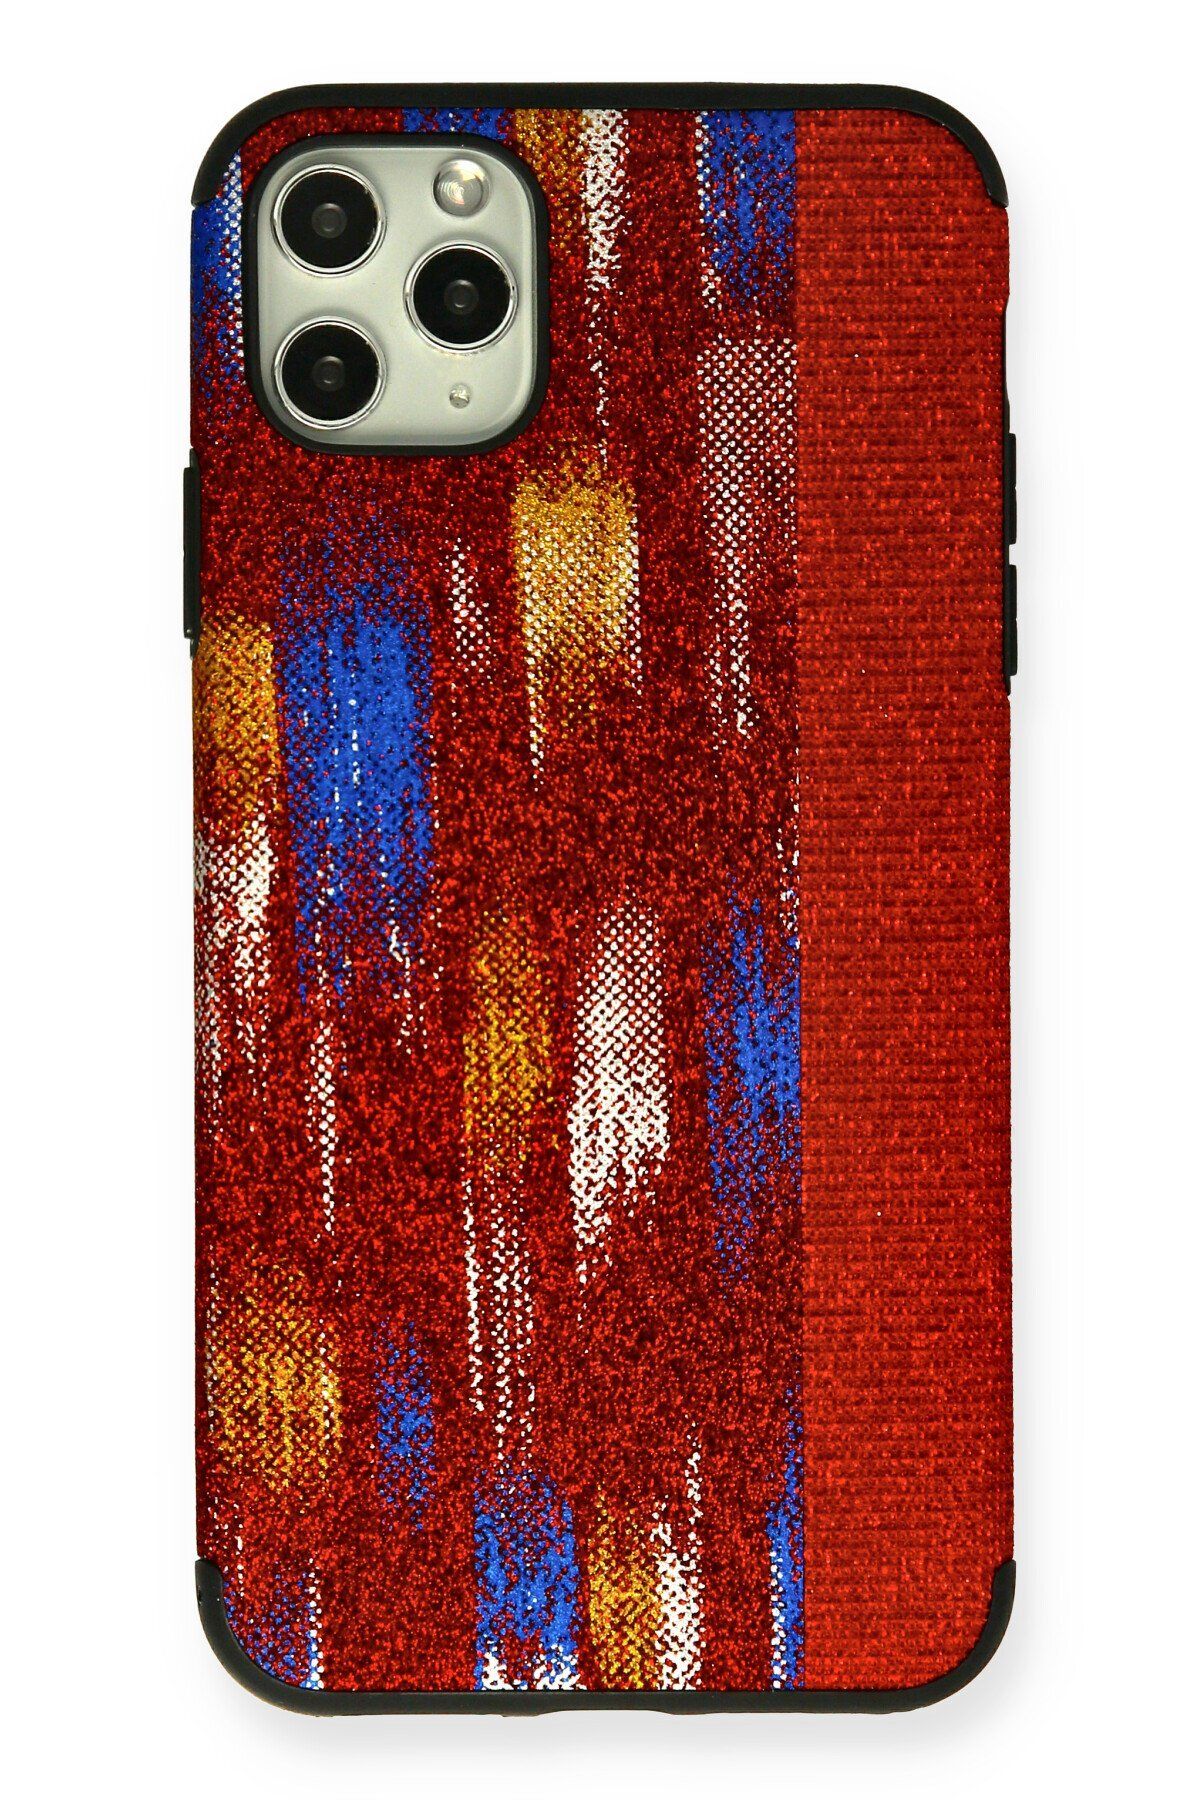 NewFace iPhone 11 Pro Max Kılıf Ottoman Simli Silikon - Kırmızı 374113